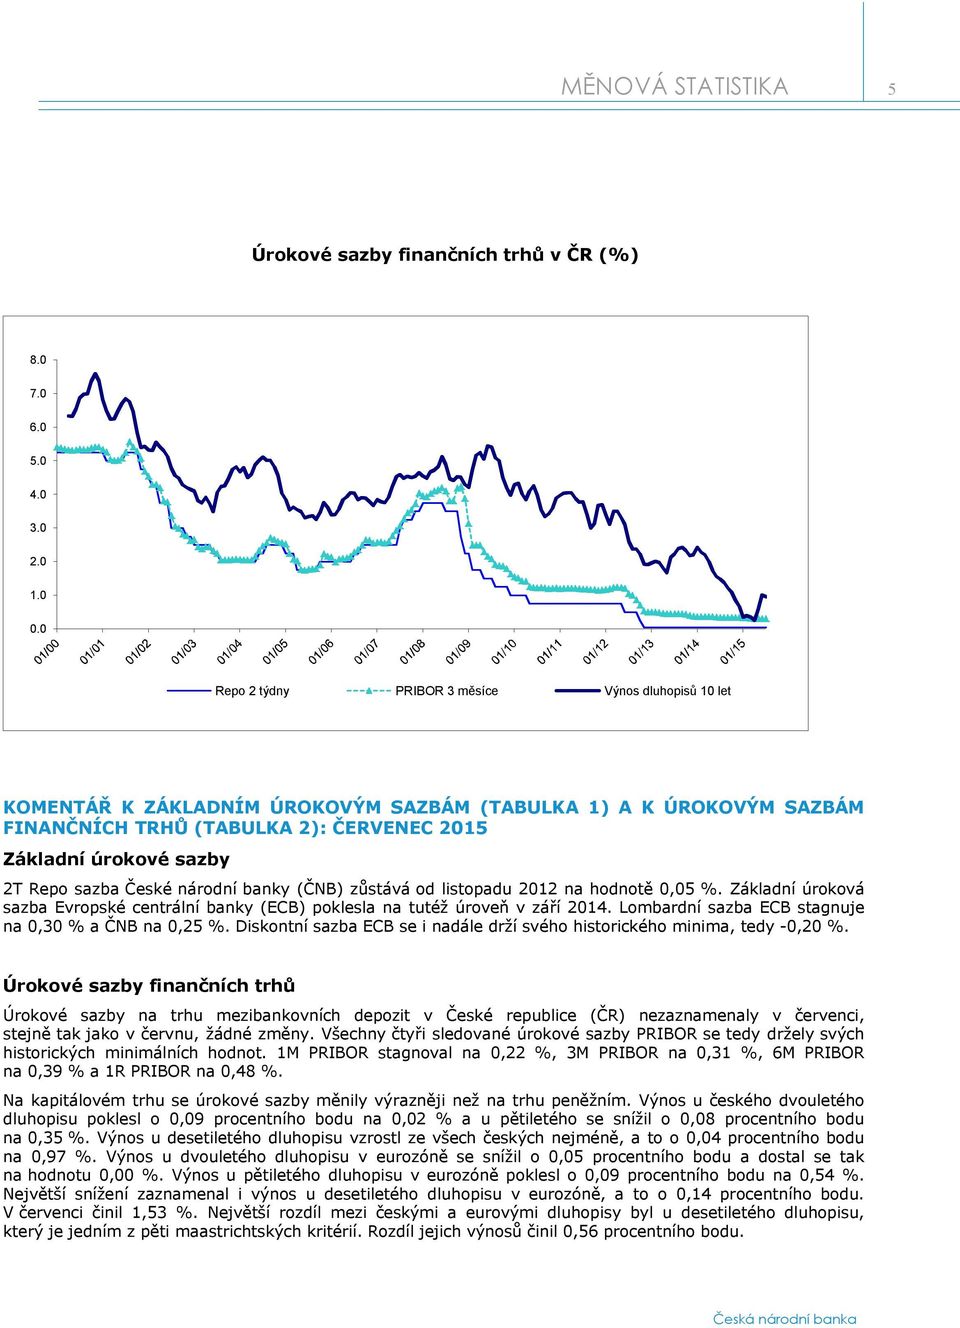 sazba České národní banky (ČNB) zůstává od listopadu 2012 na hodnotě 0,05 %. Základní úroková sazba Evropské centrální banky (ECB) poklesla na tutéž úroveň v září 2014.